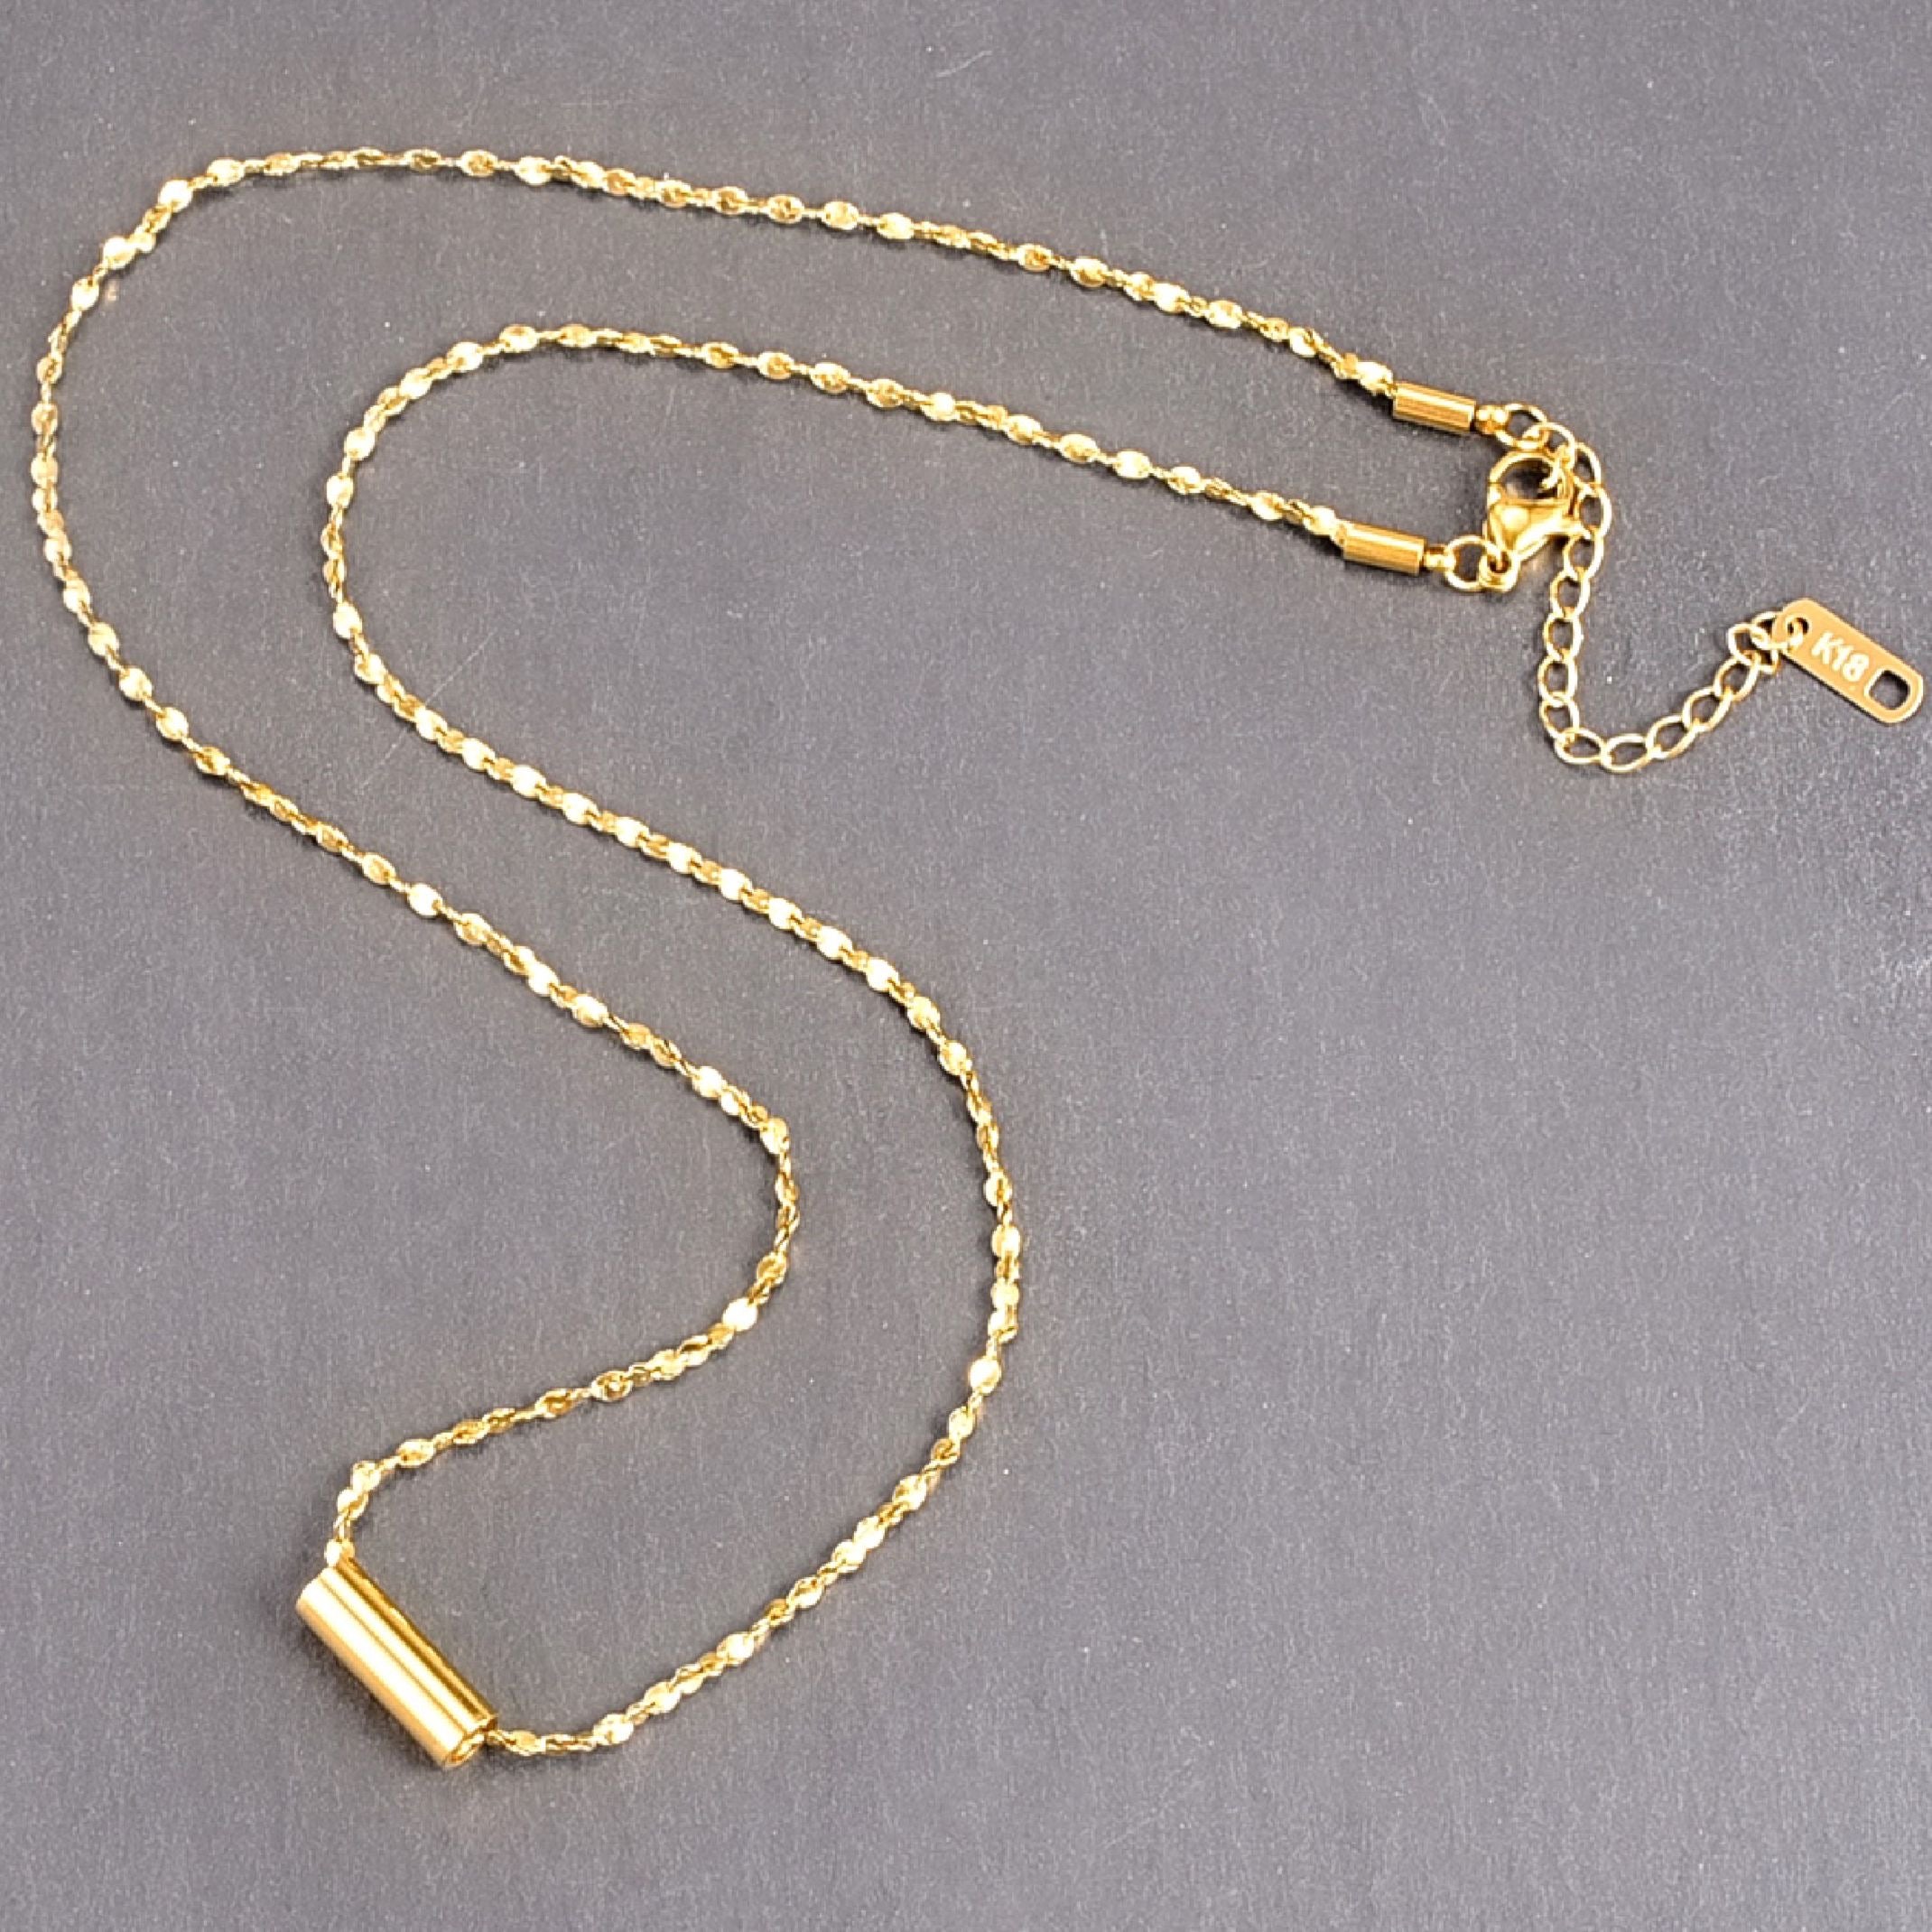 18k gold cylinder pendant necklace